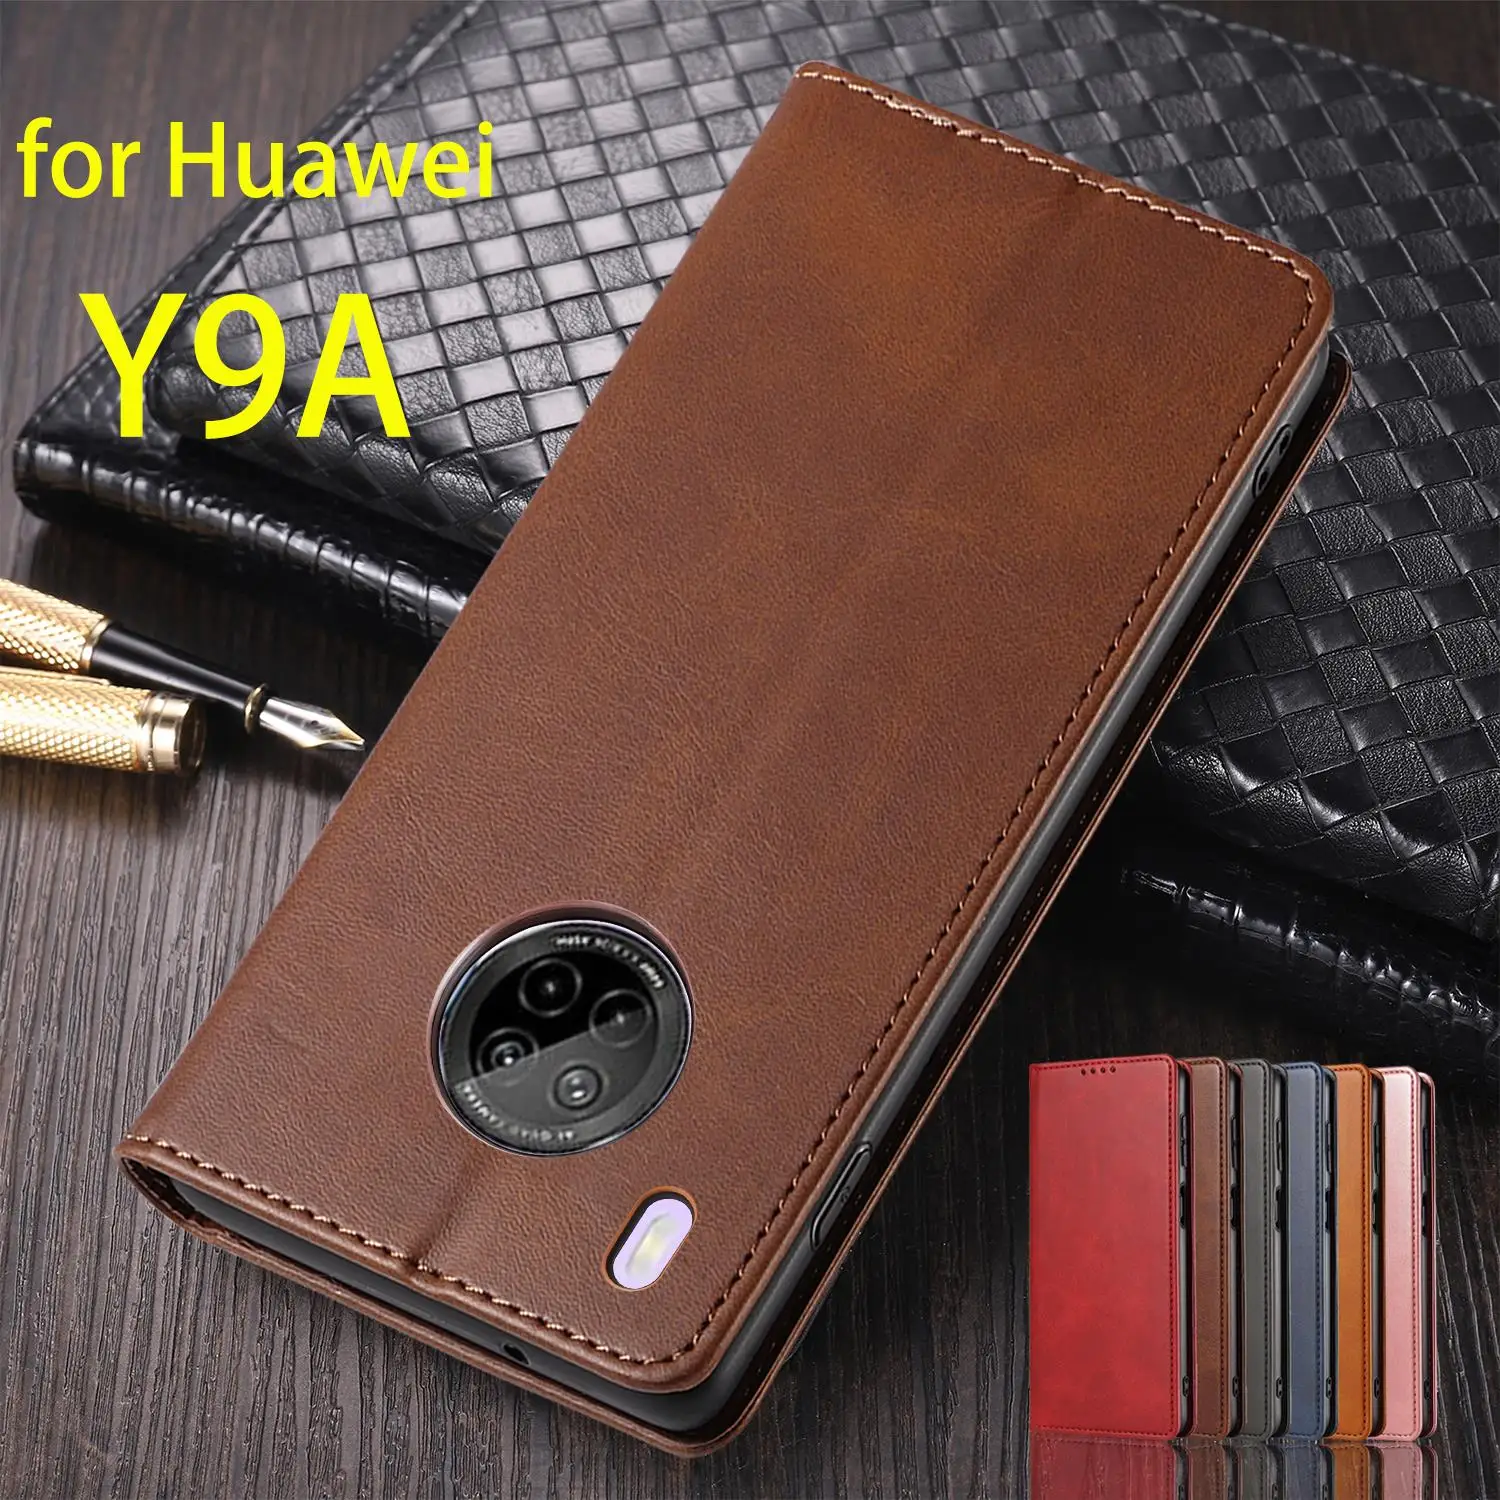 

Кожаный чехол для Huawei Y9A, флип-чехол, держатель для карт, кобура, магнитный Привлекательный чехол для Huawei Y9A, кошелек, чехол, Fundas Coque